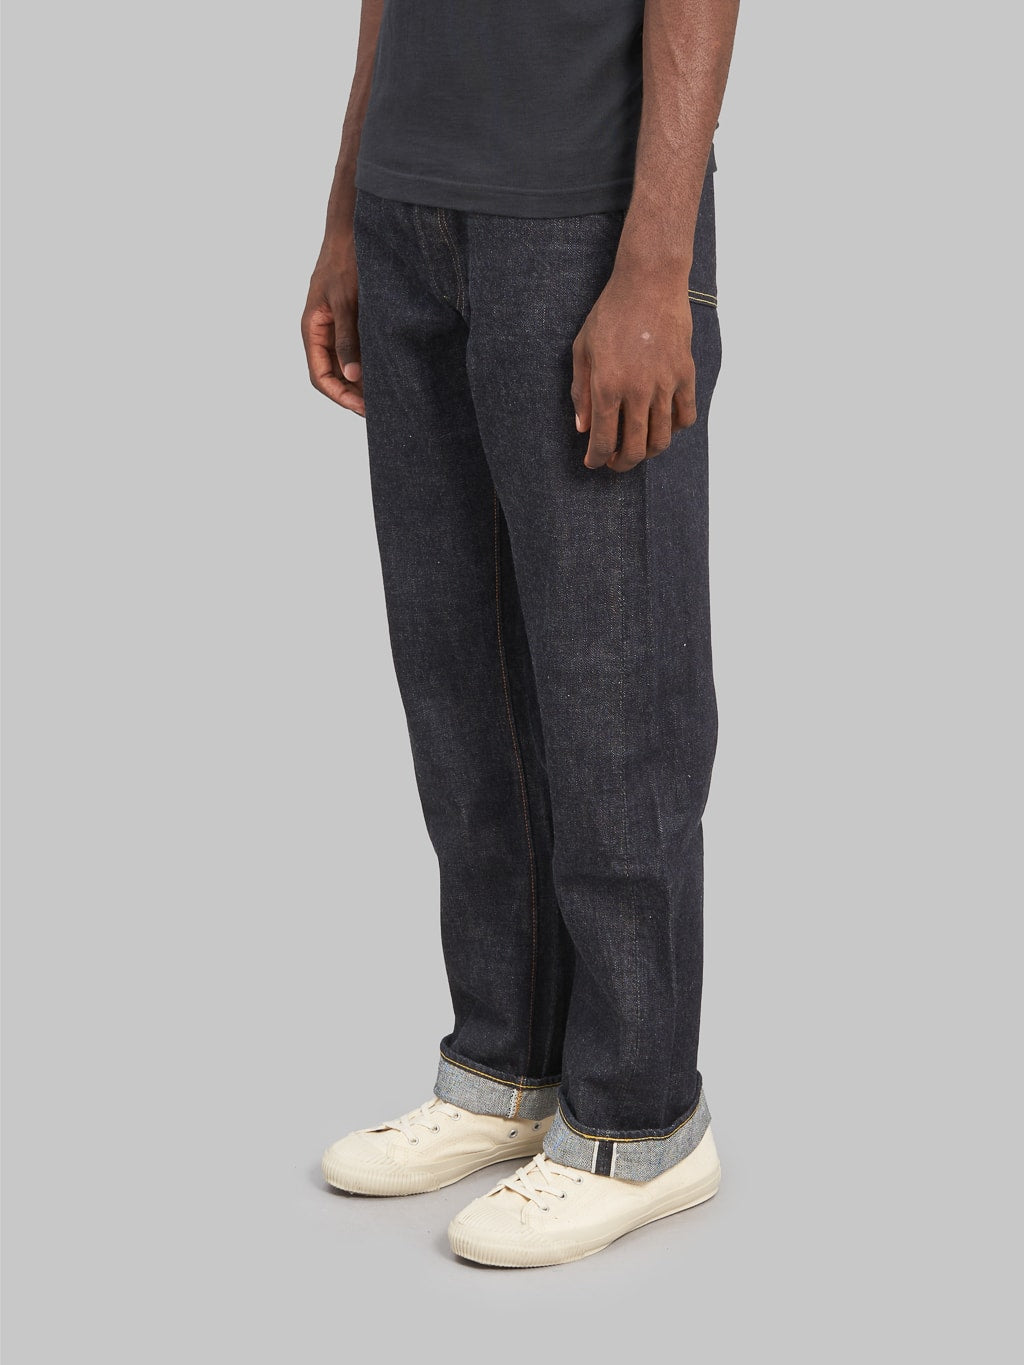 Fullcount 1101XXW regular Straight selvedge Jeans side fit